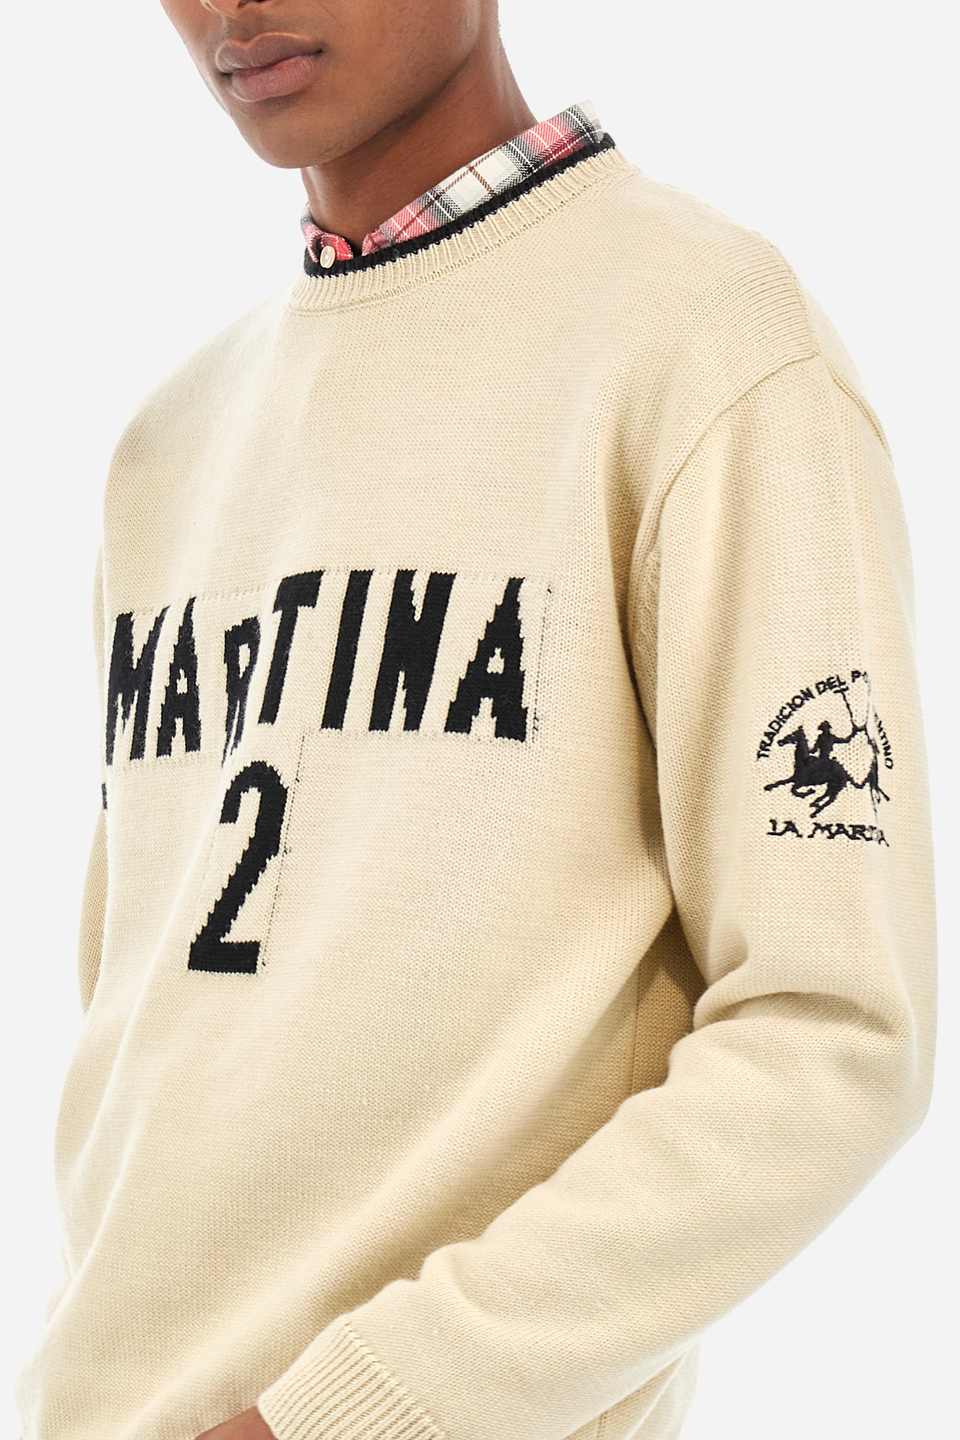 Men’s comfort fit crew neck sweater - Walenkino | La Martina - Official Online Shop